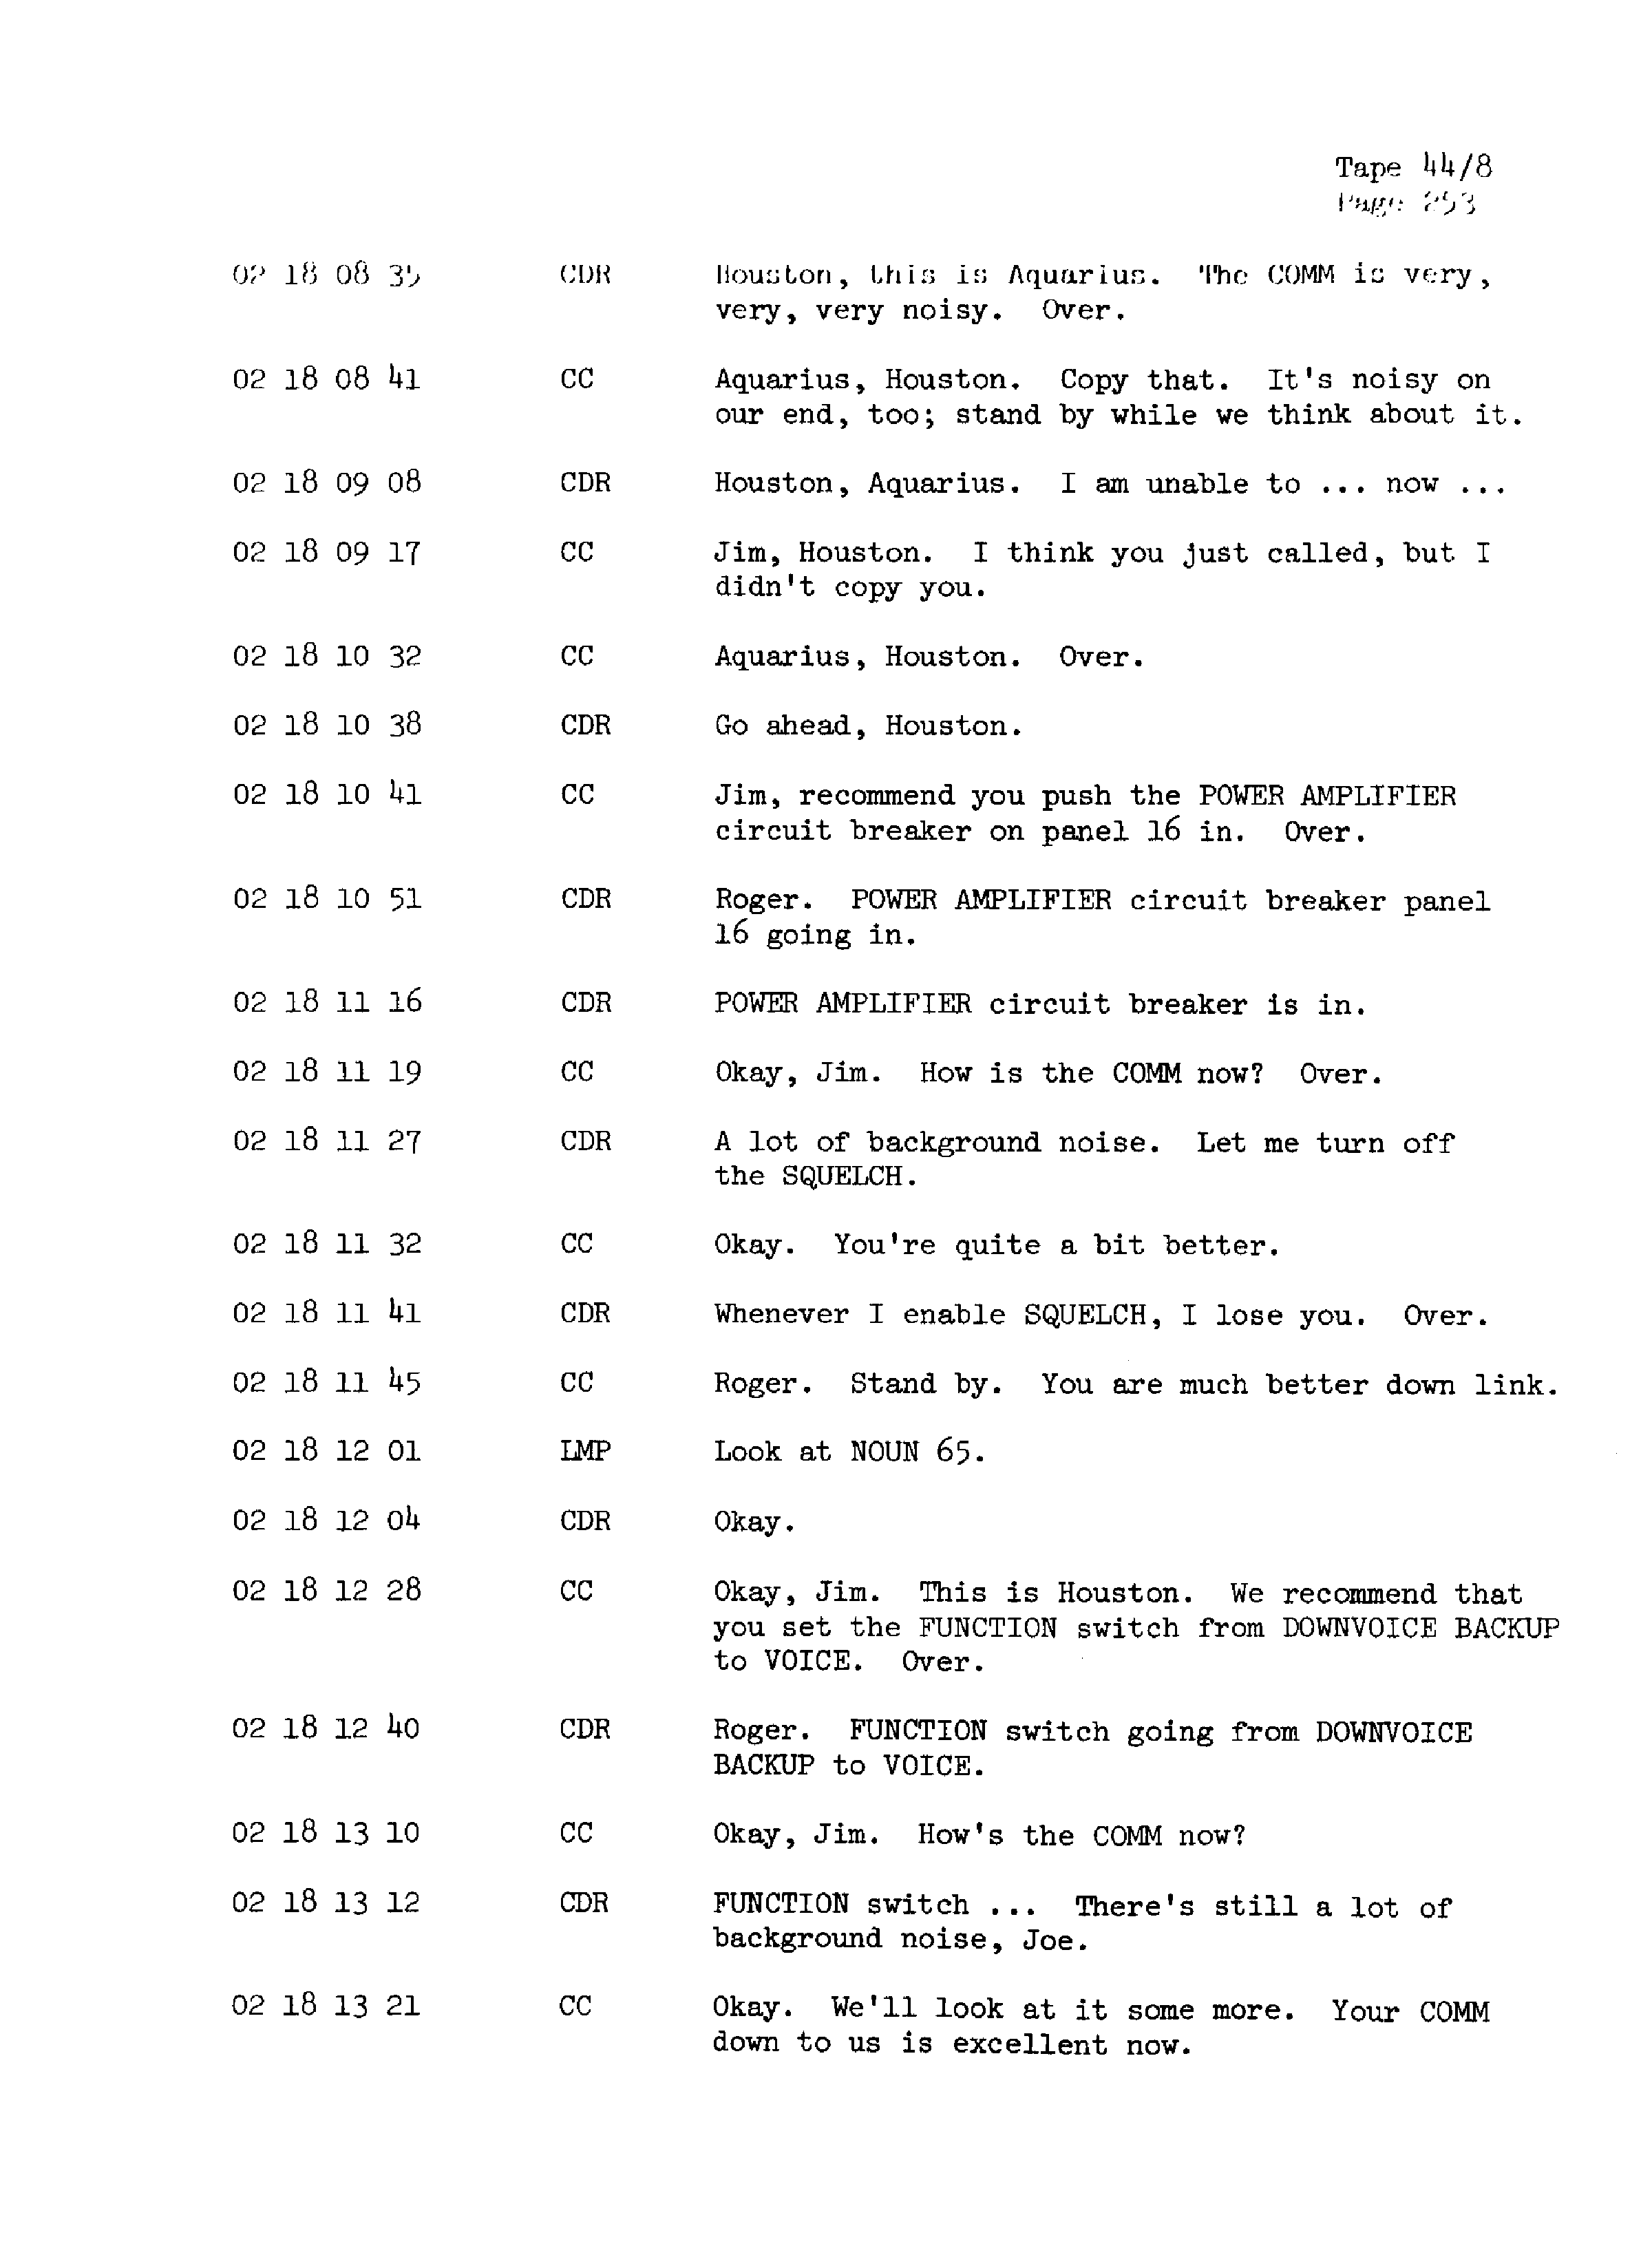 Page 260 of Apollo 13’s original transcript